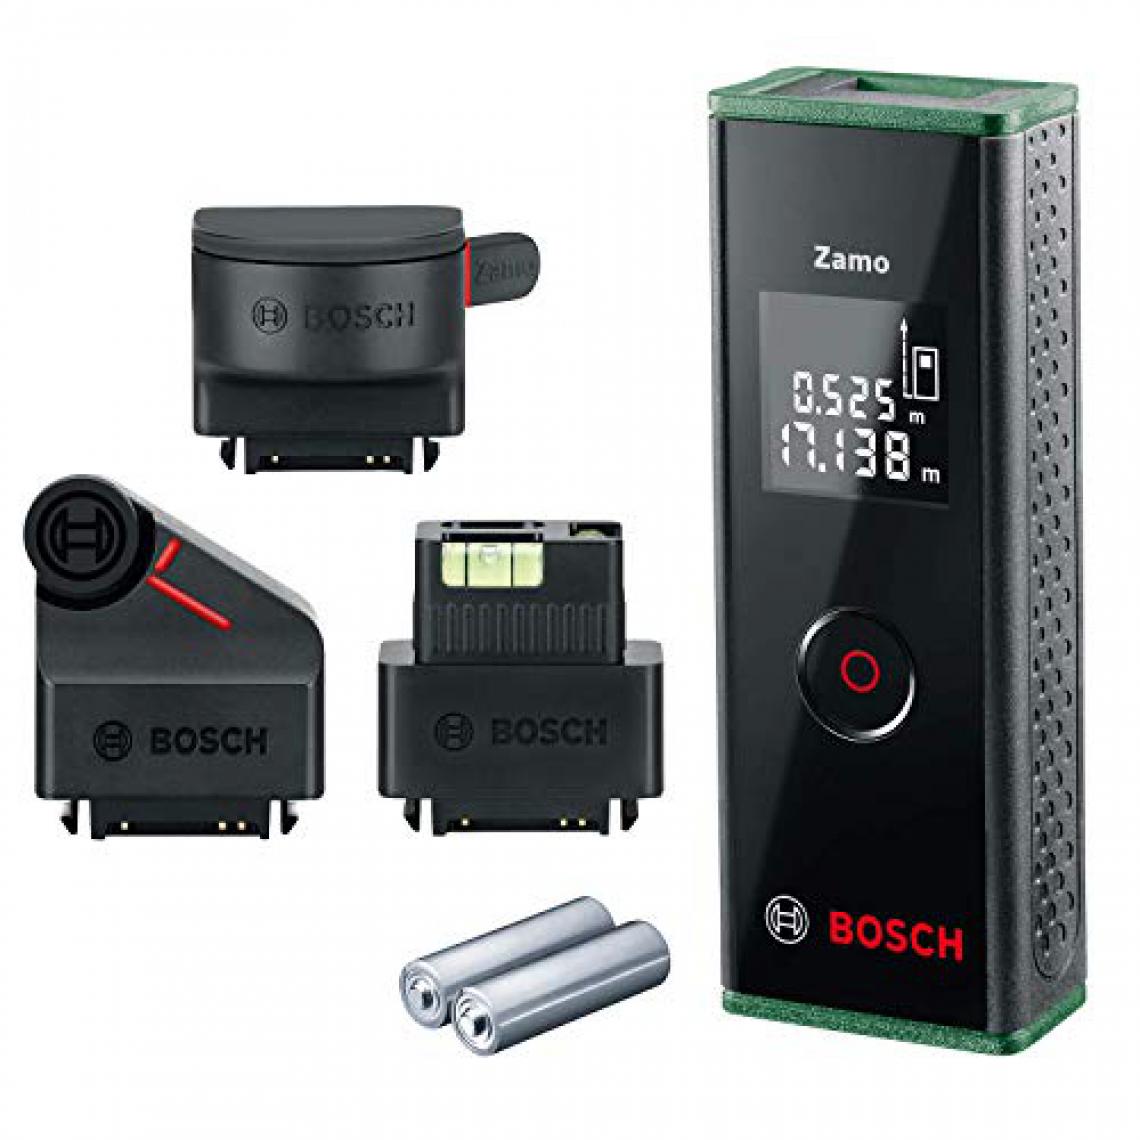 1Control - Télémètre laser Bosch Zamo - Mètres